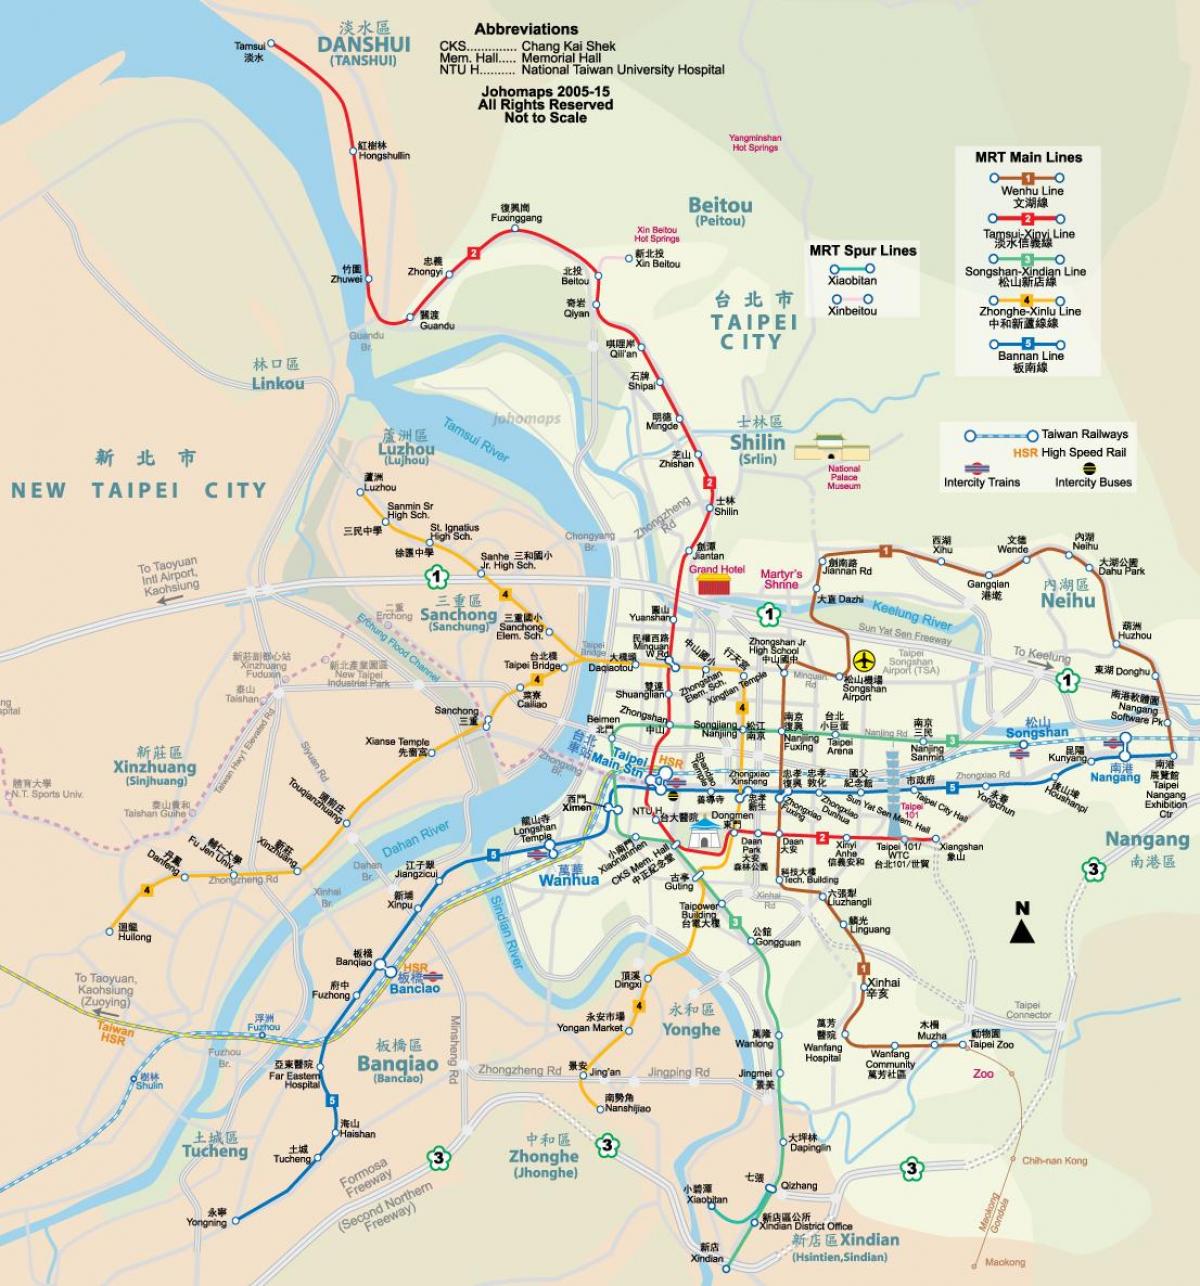 Taipei city zemljevid